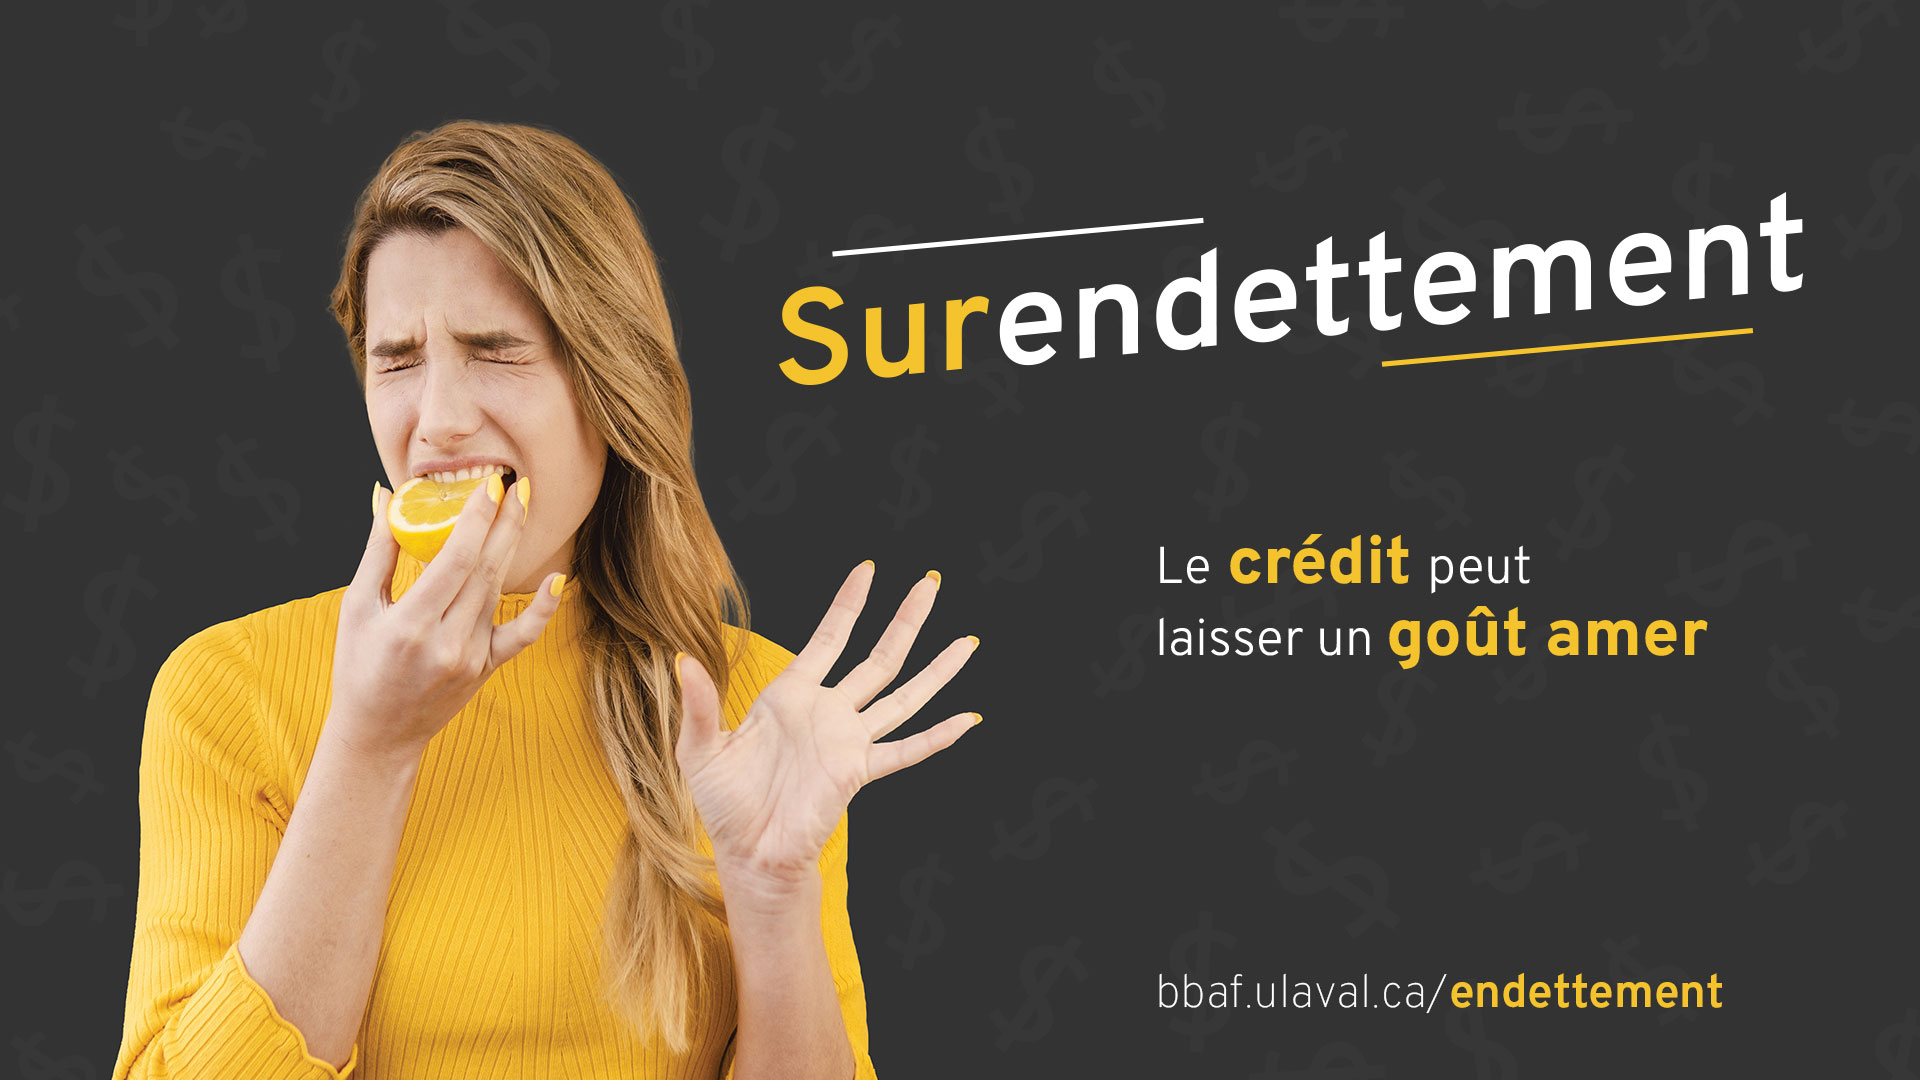 Surendettement: le crédit peut laisser un goût amer. Informez-vous! bbaf.ulaval.ca/endettement